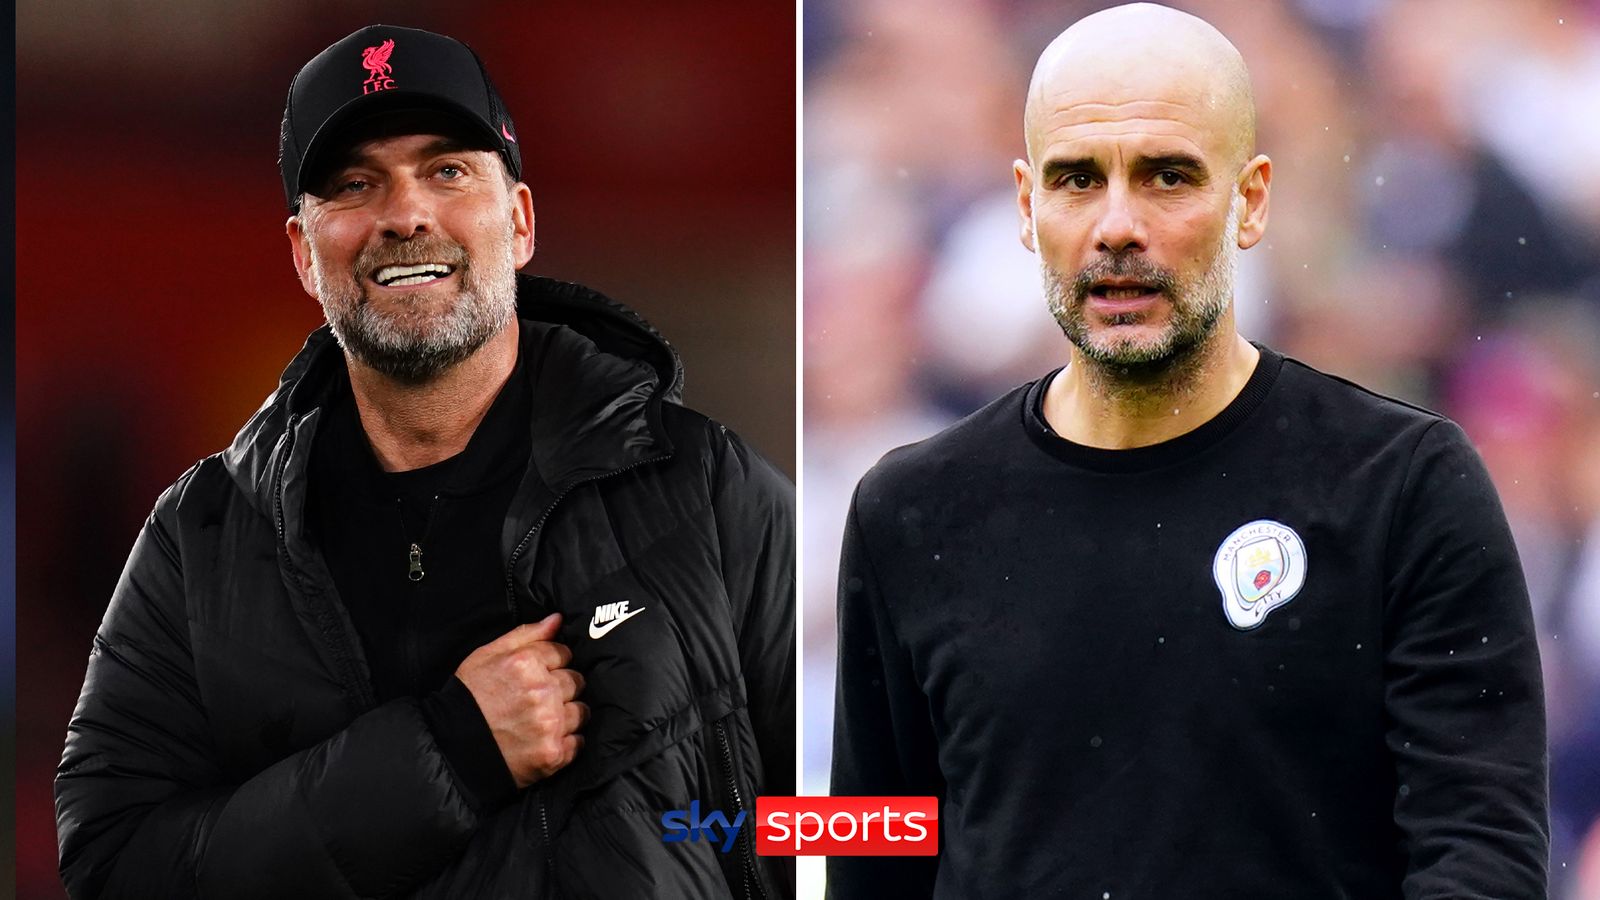 El entrenador del Liverpool, Jurgen Klopp, dice que ningún equipo puede competir con el Manchester City antes del choque del Súper Domingo |  Noticias de futbol